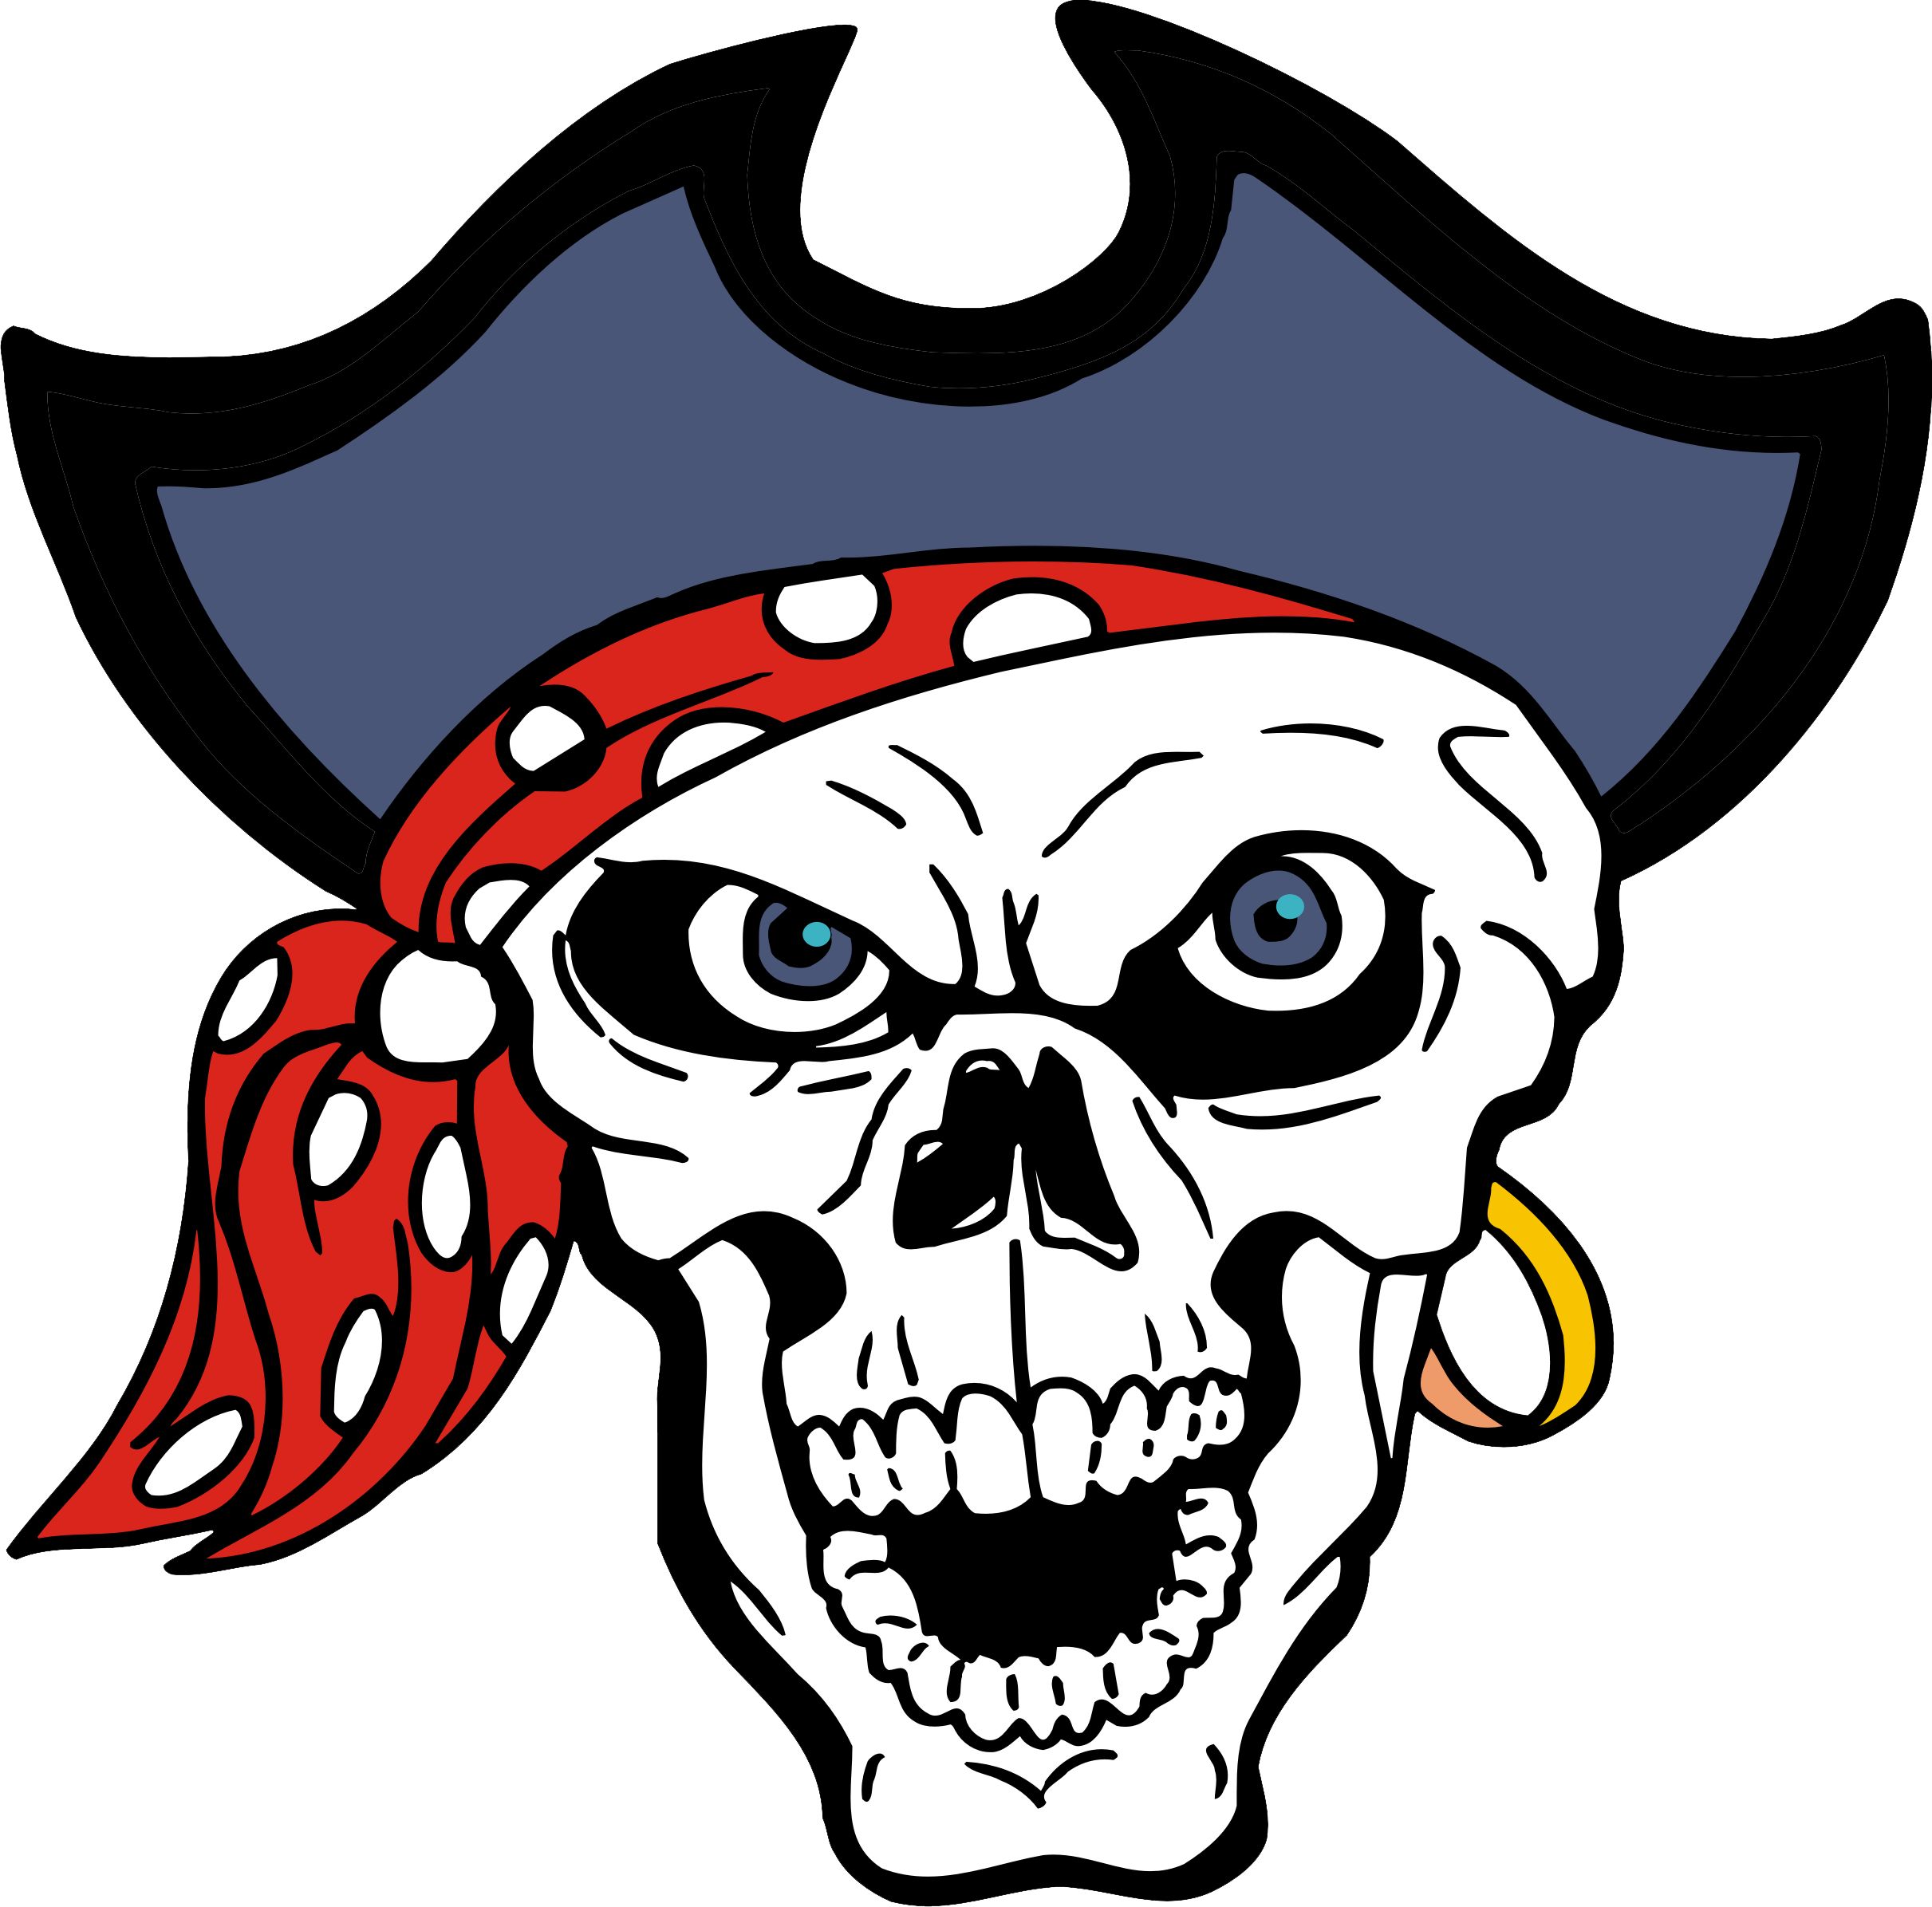 Весёлый Роджер у пиратов. Весёлый Роджер знак пирата. Пиратский череп. Череп пирата.